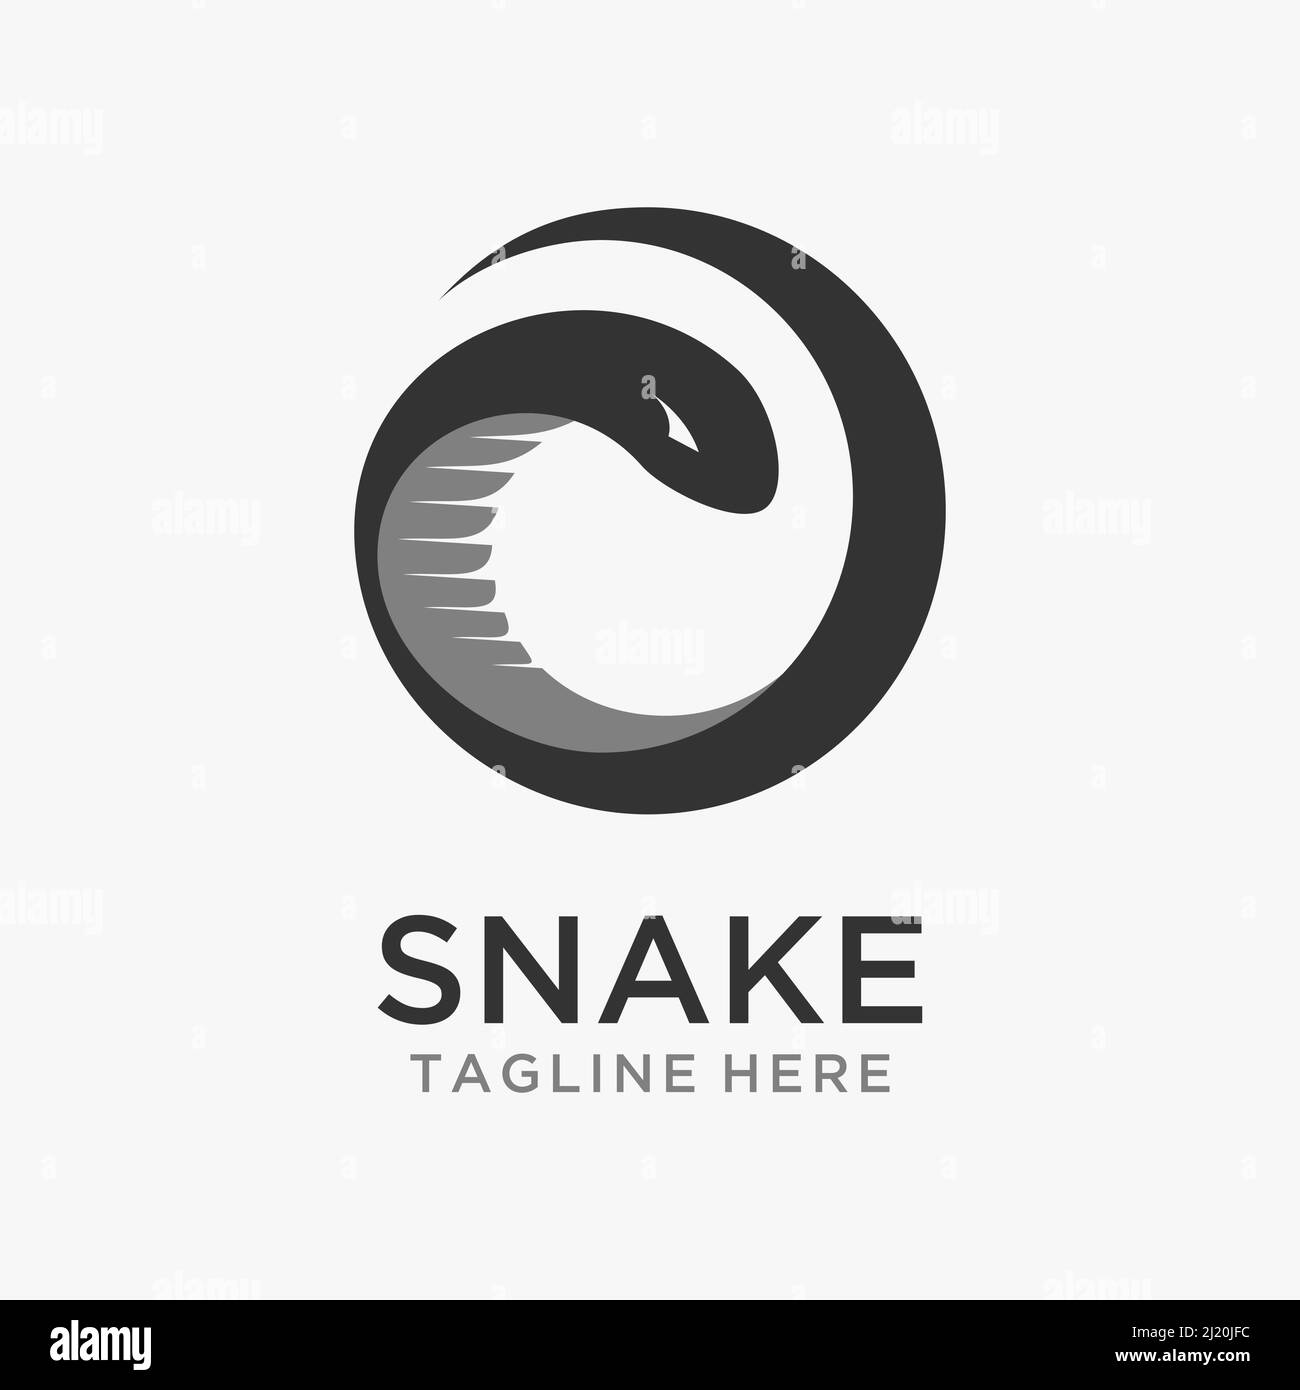 Circle snake logo design Stock Vector